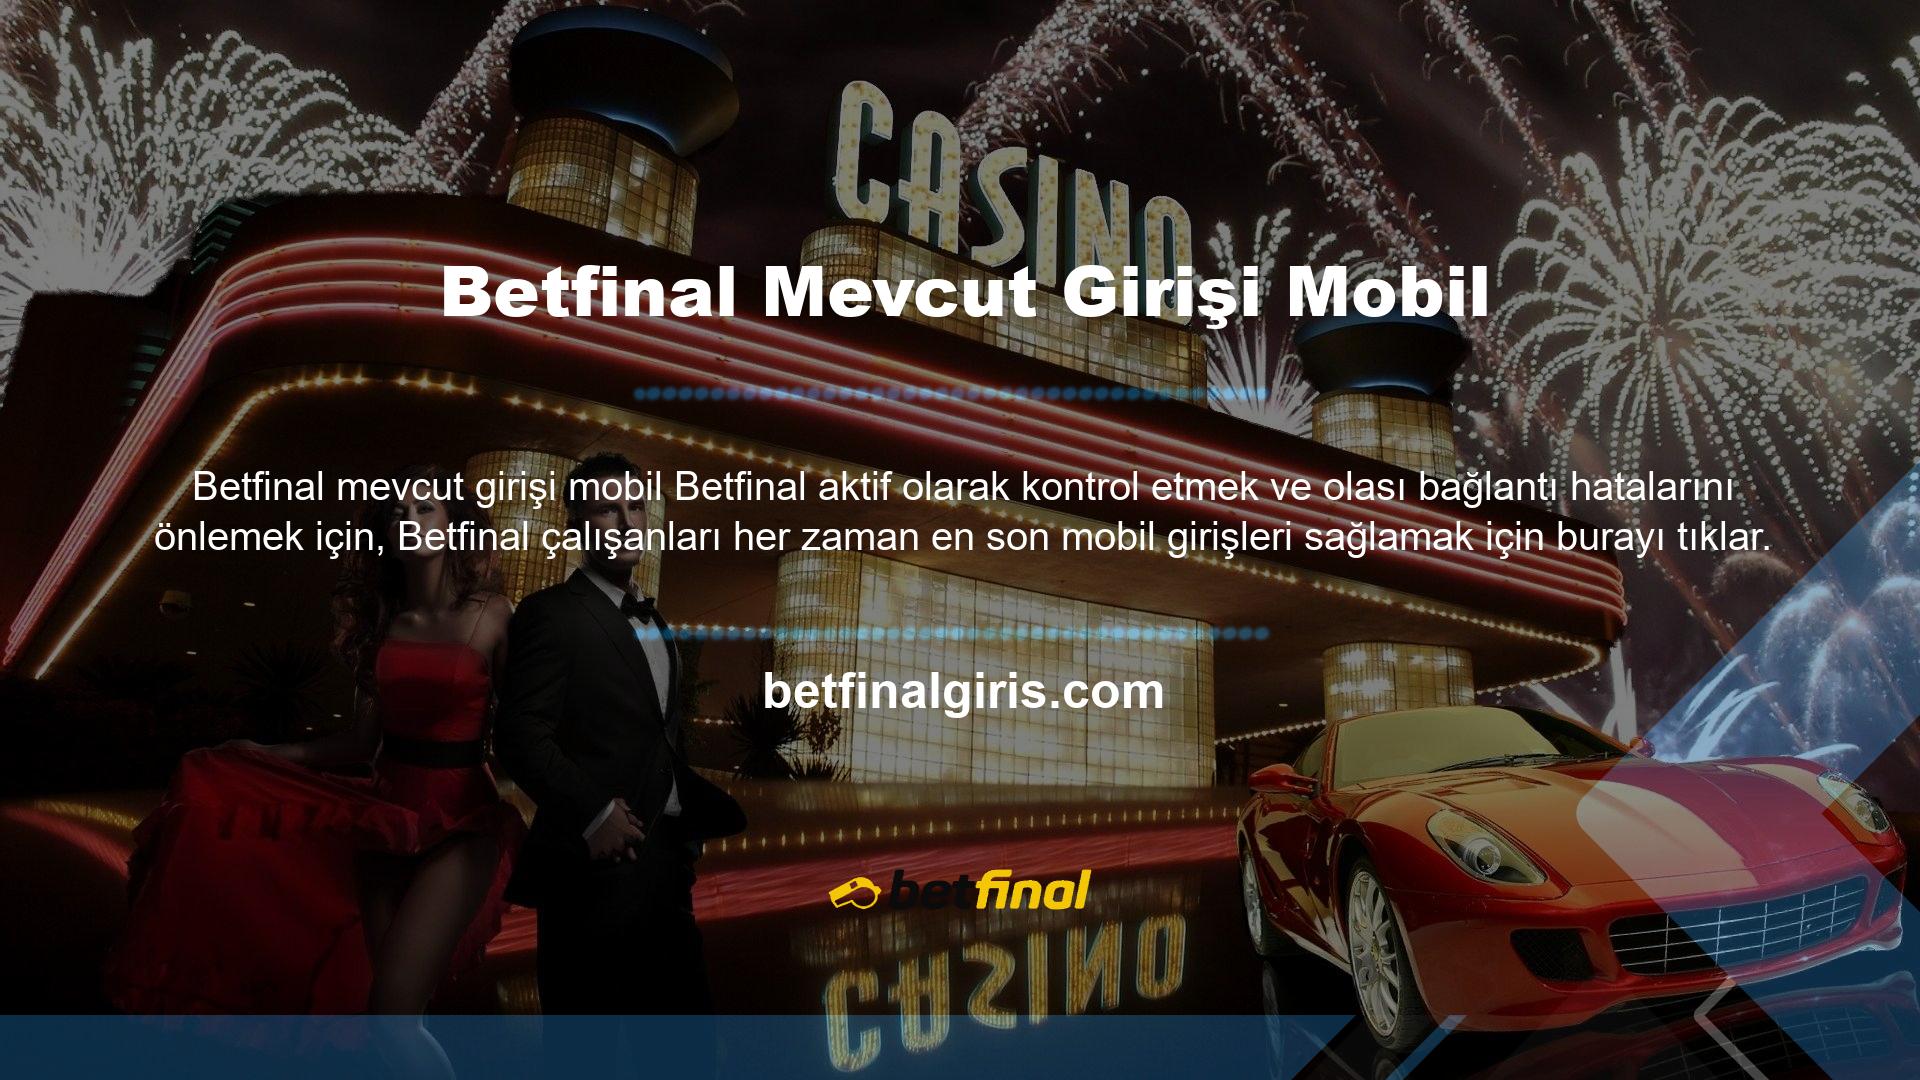 Mevcut Betfinal mobil erişimini sağlayabiliriz